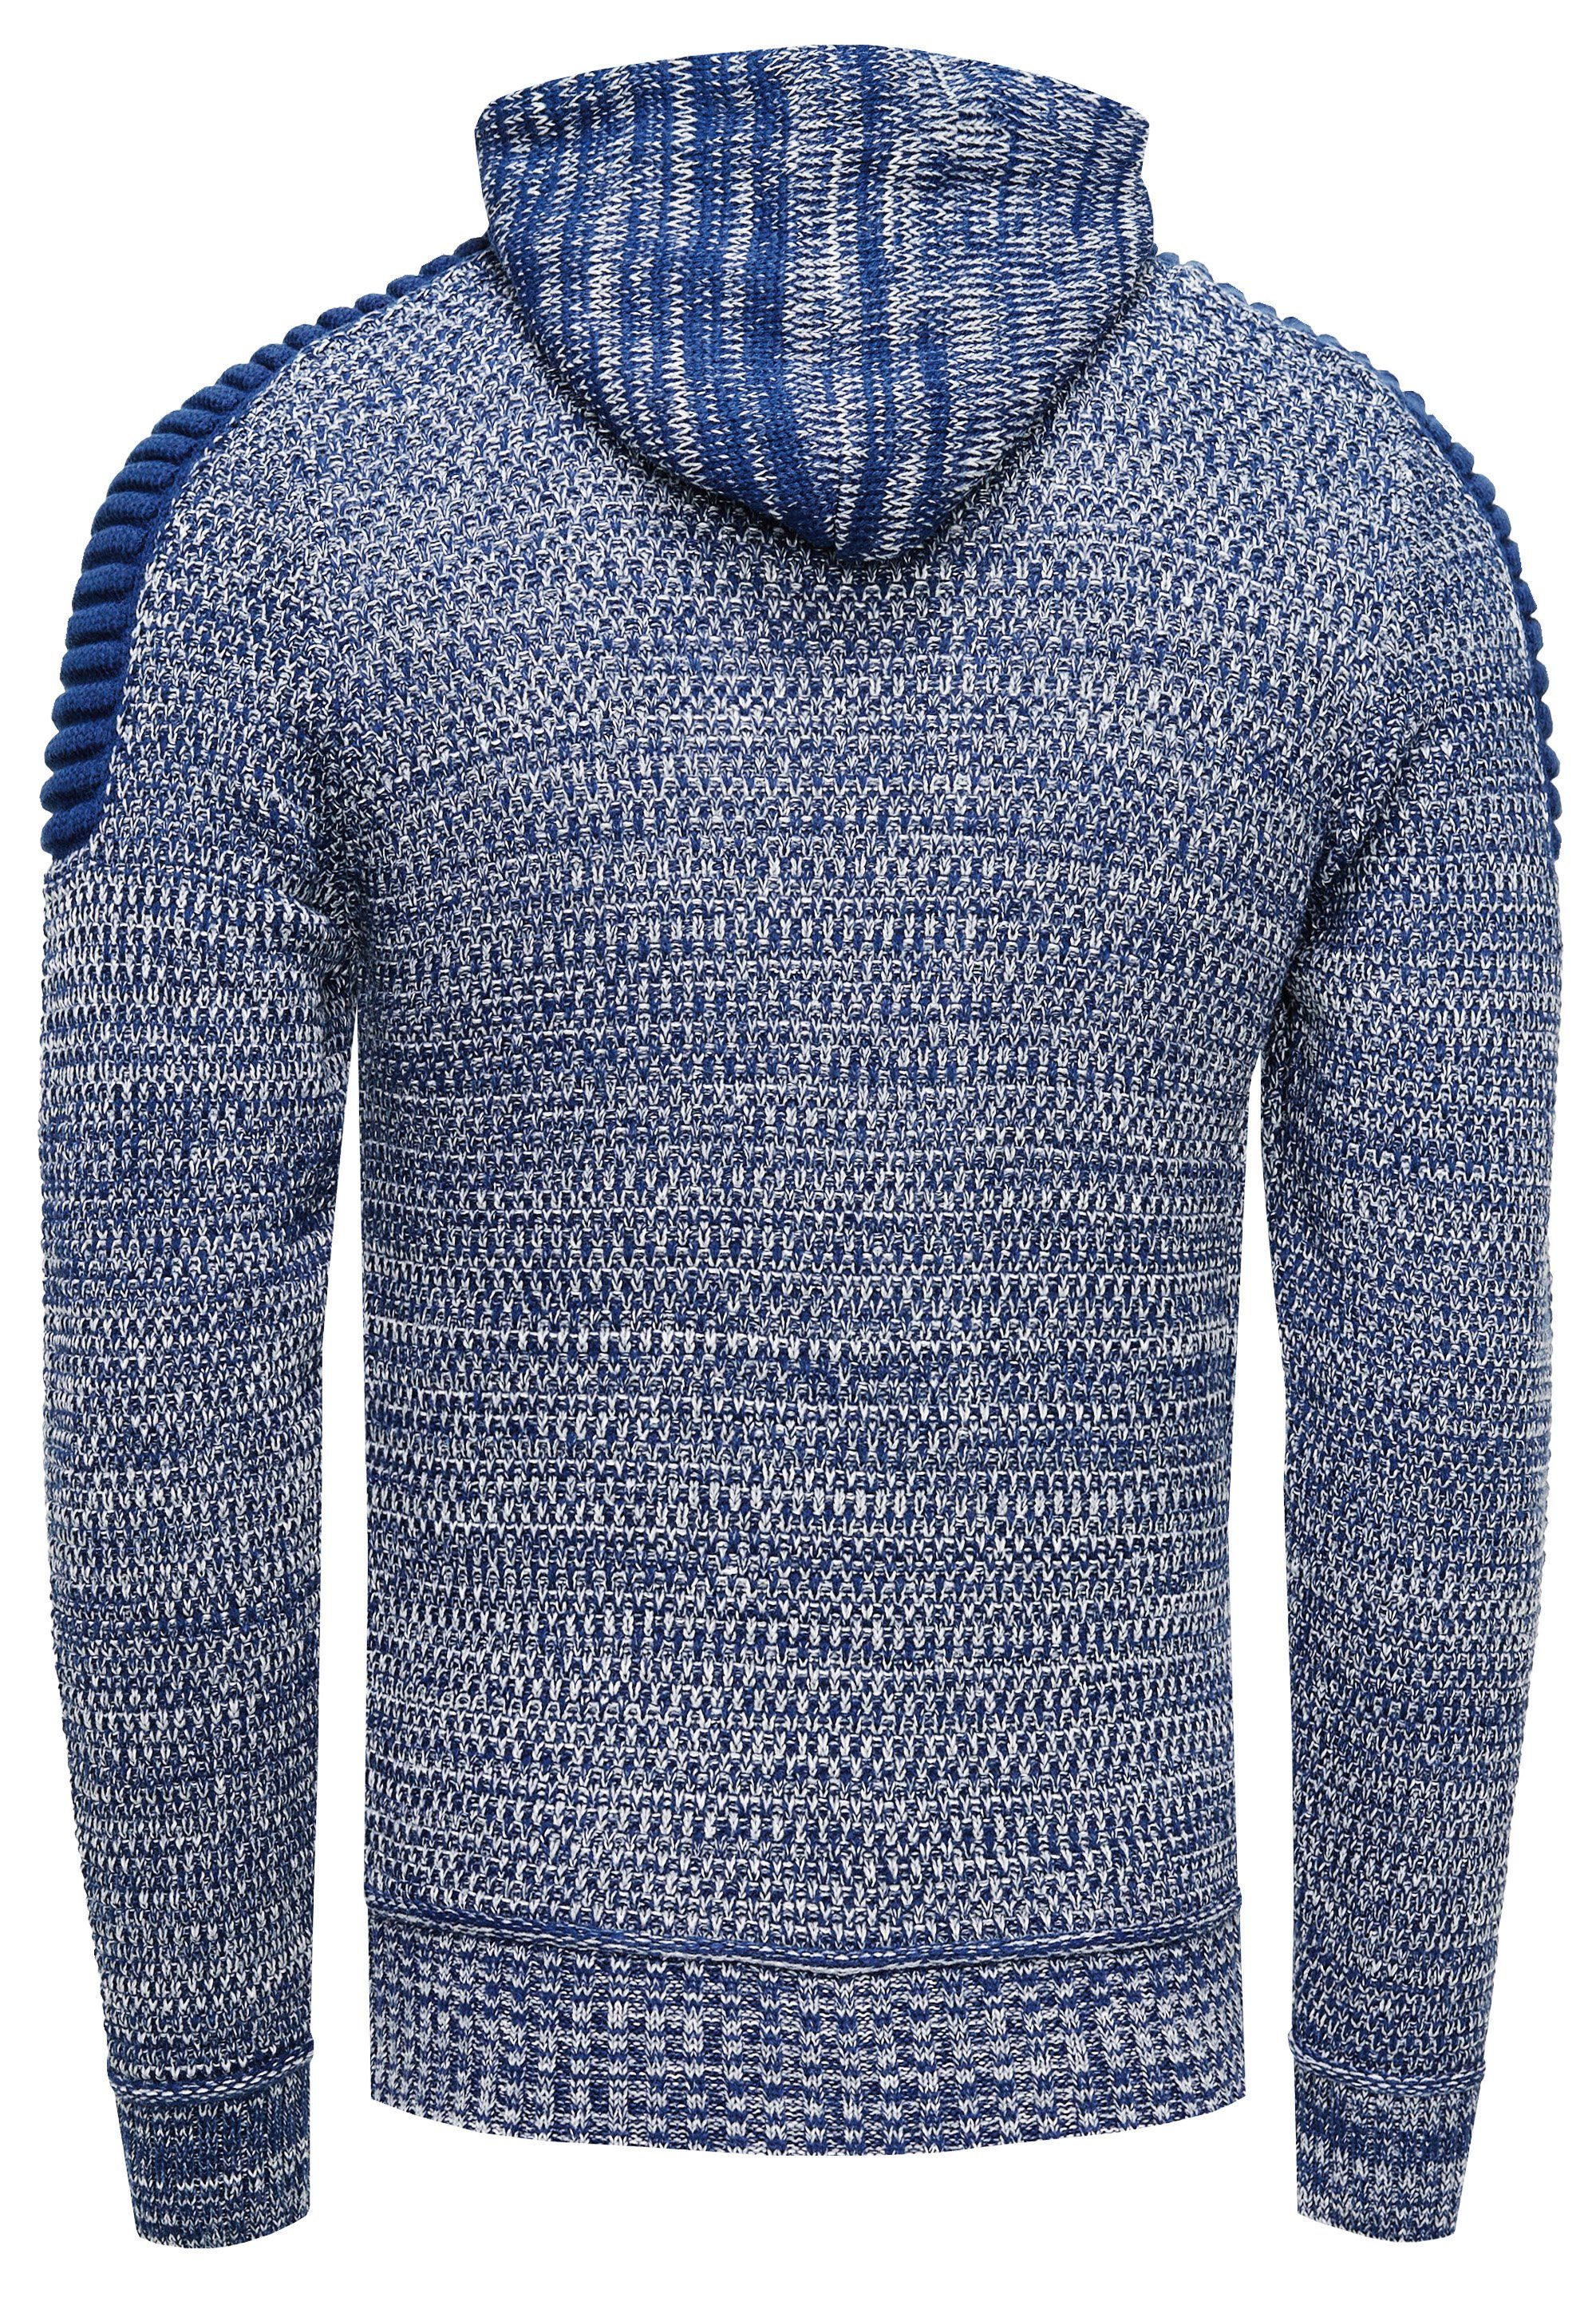 Rusty Neal Knitwear mit Kapuzensweatshirt blau praktischem Reißverschluss